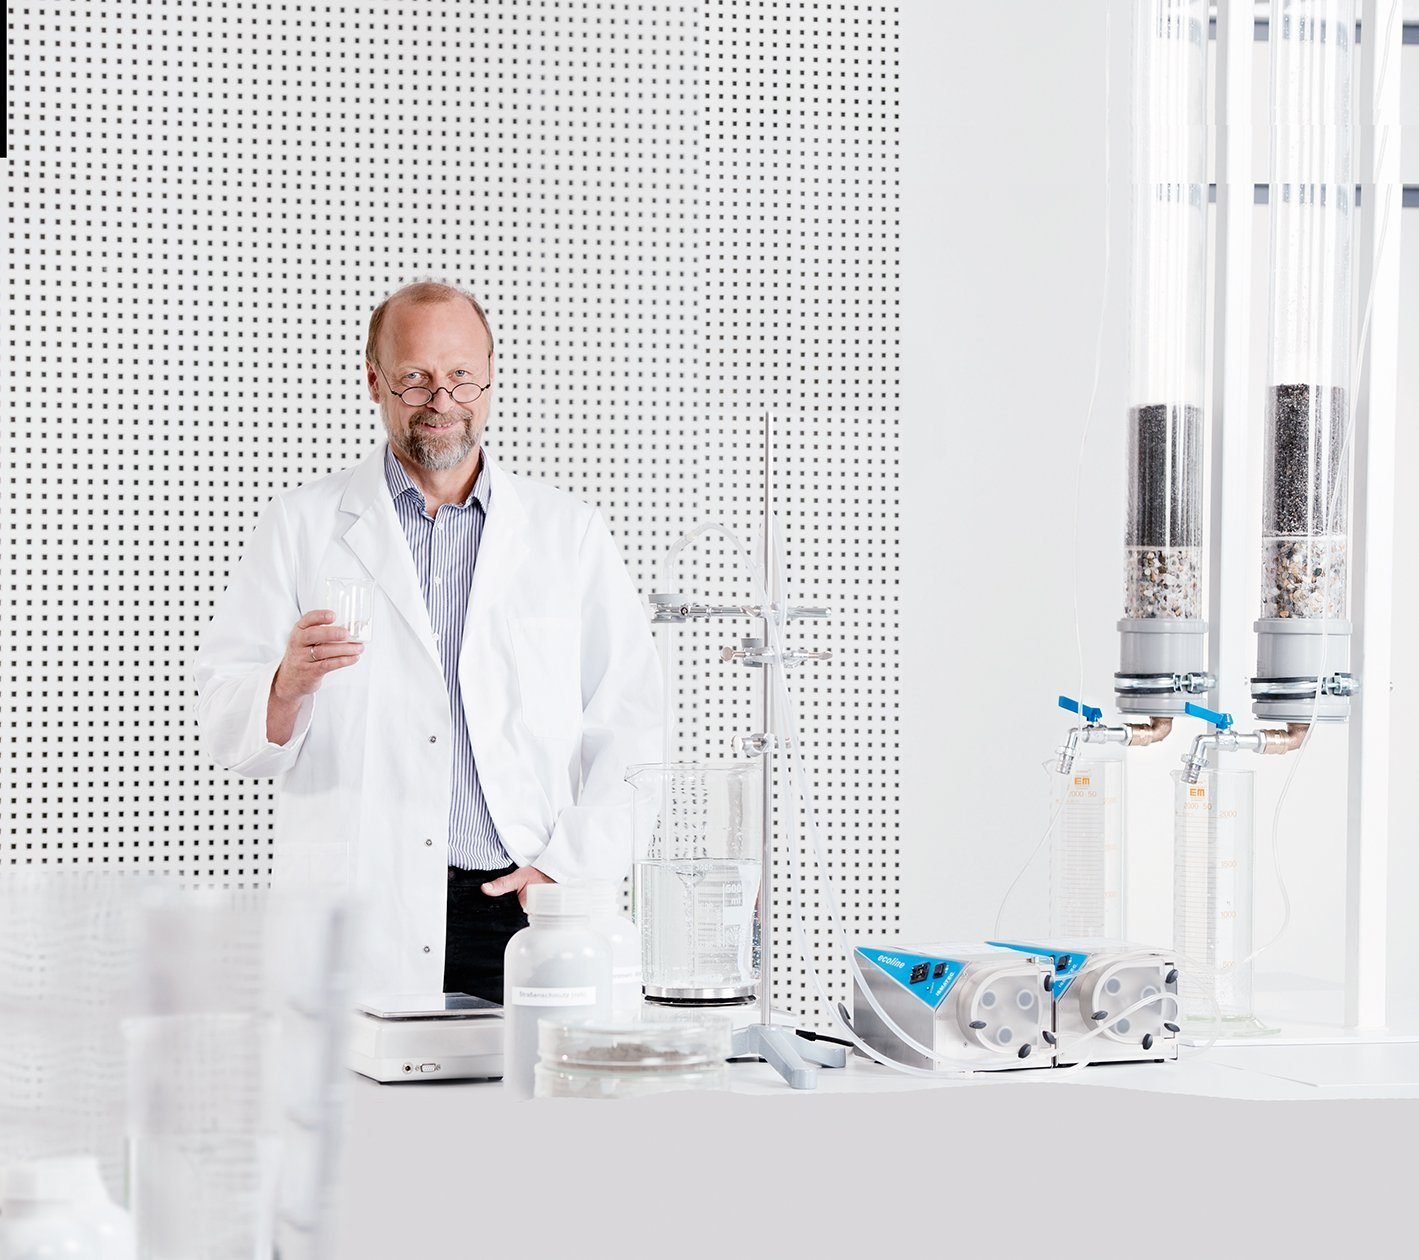 Клаус Хуве Създател на продукти в лабораторията